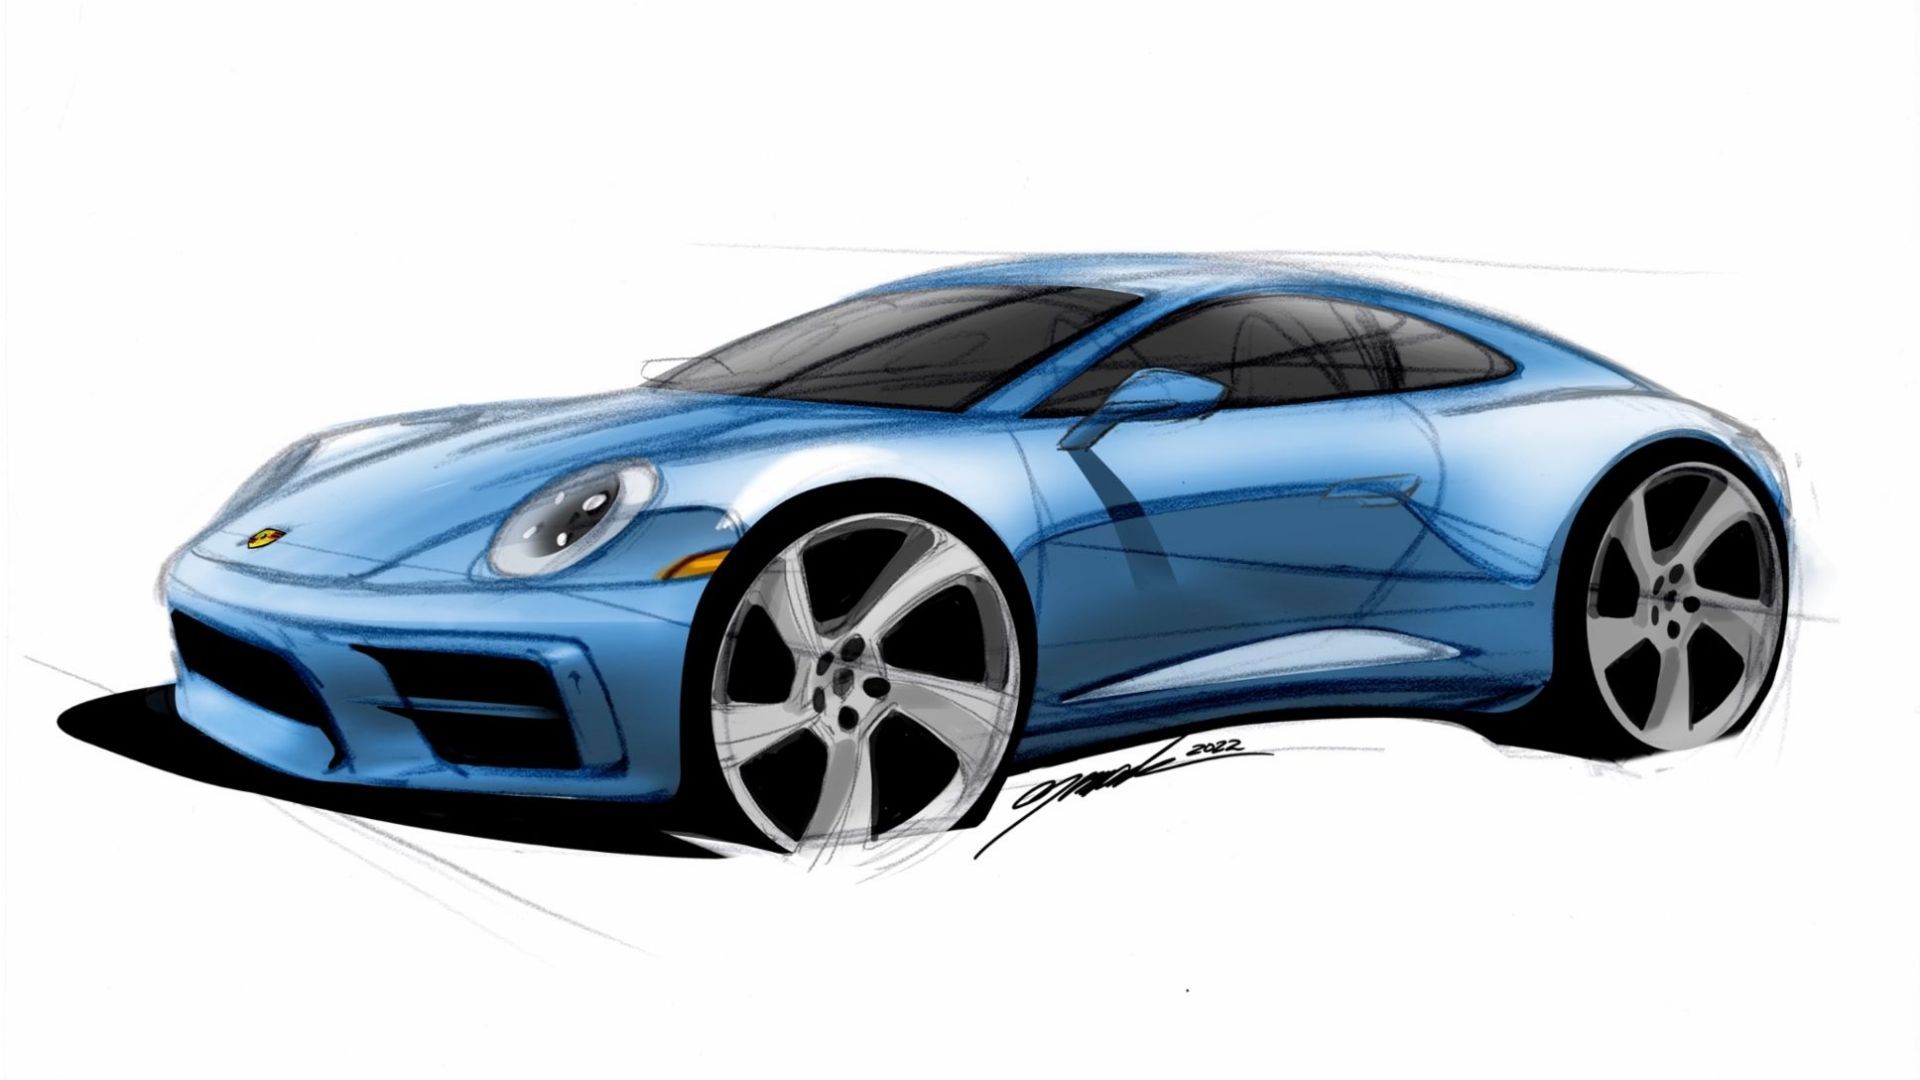 Porsche to auction exclusive design sketch as a nonfungible token  Porsche  Newsroom